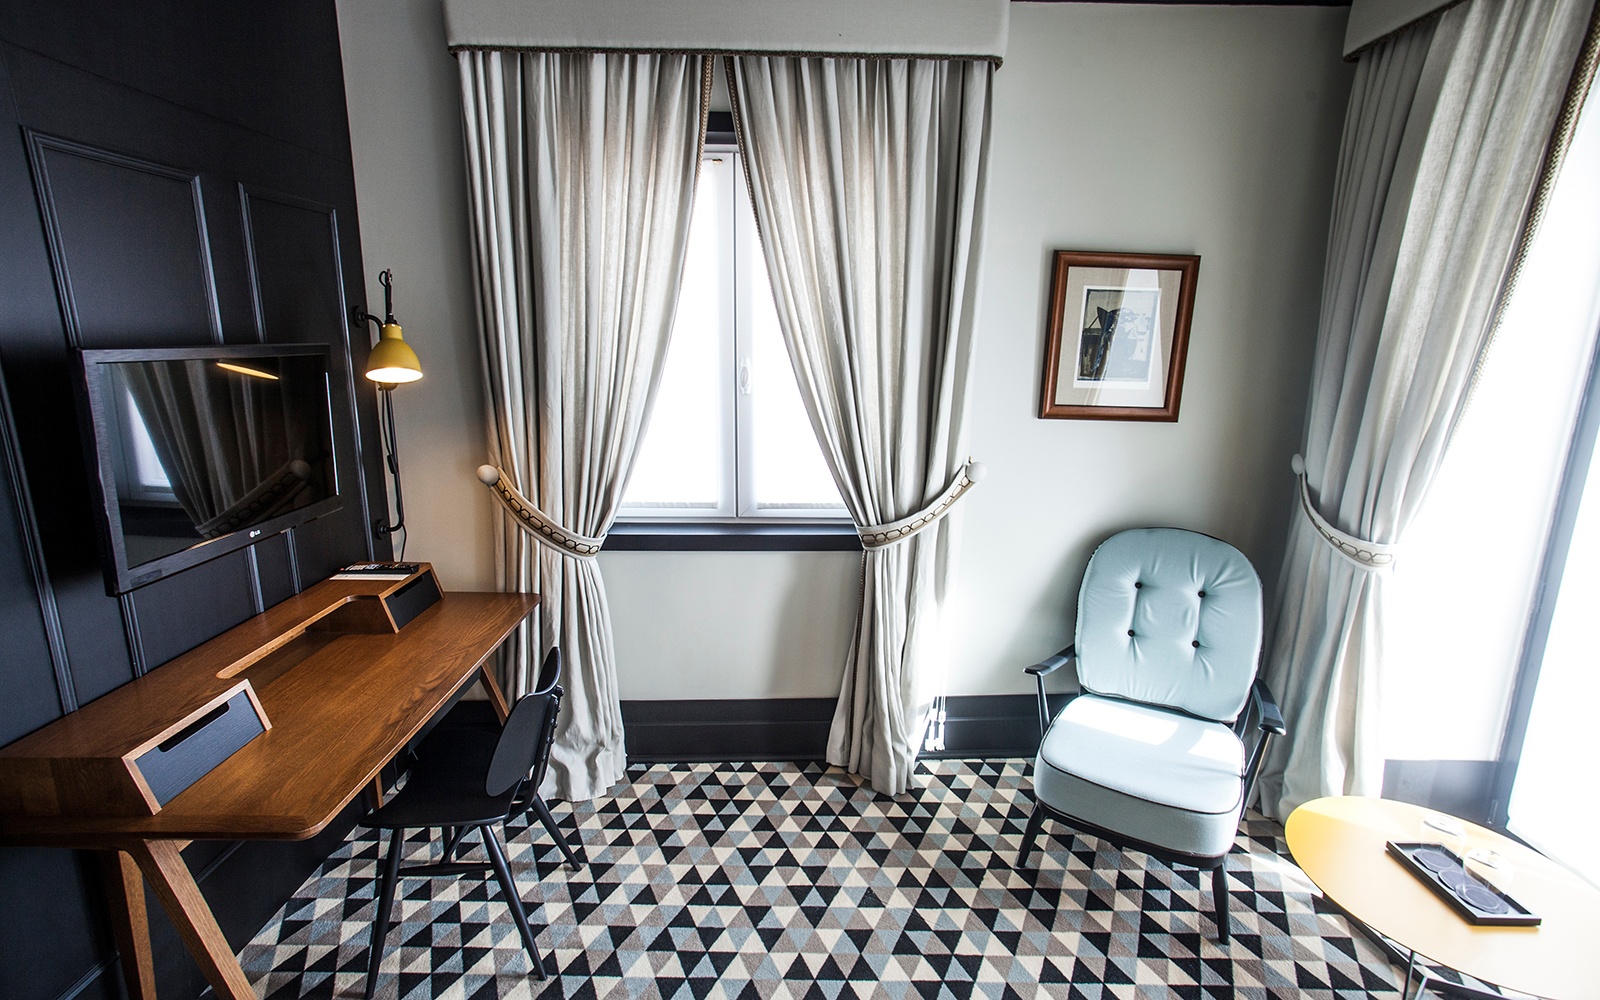 Hotelteppich: Gemusterte Teppiche verbindet Mobiliar, Textileine und Wände gekonnt und stillvoll im Hotelzimmer